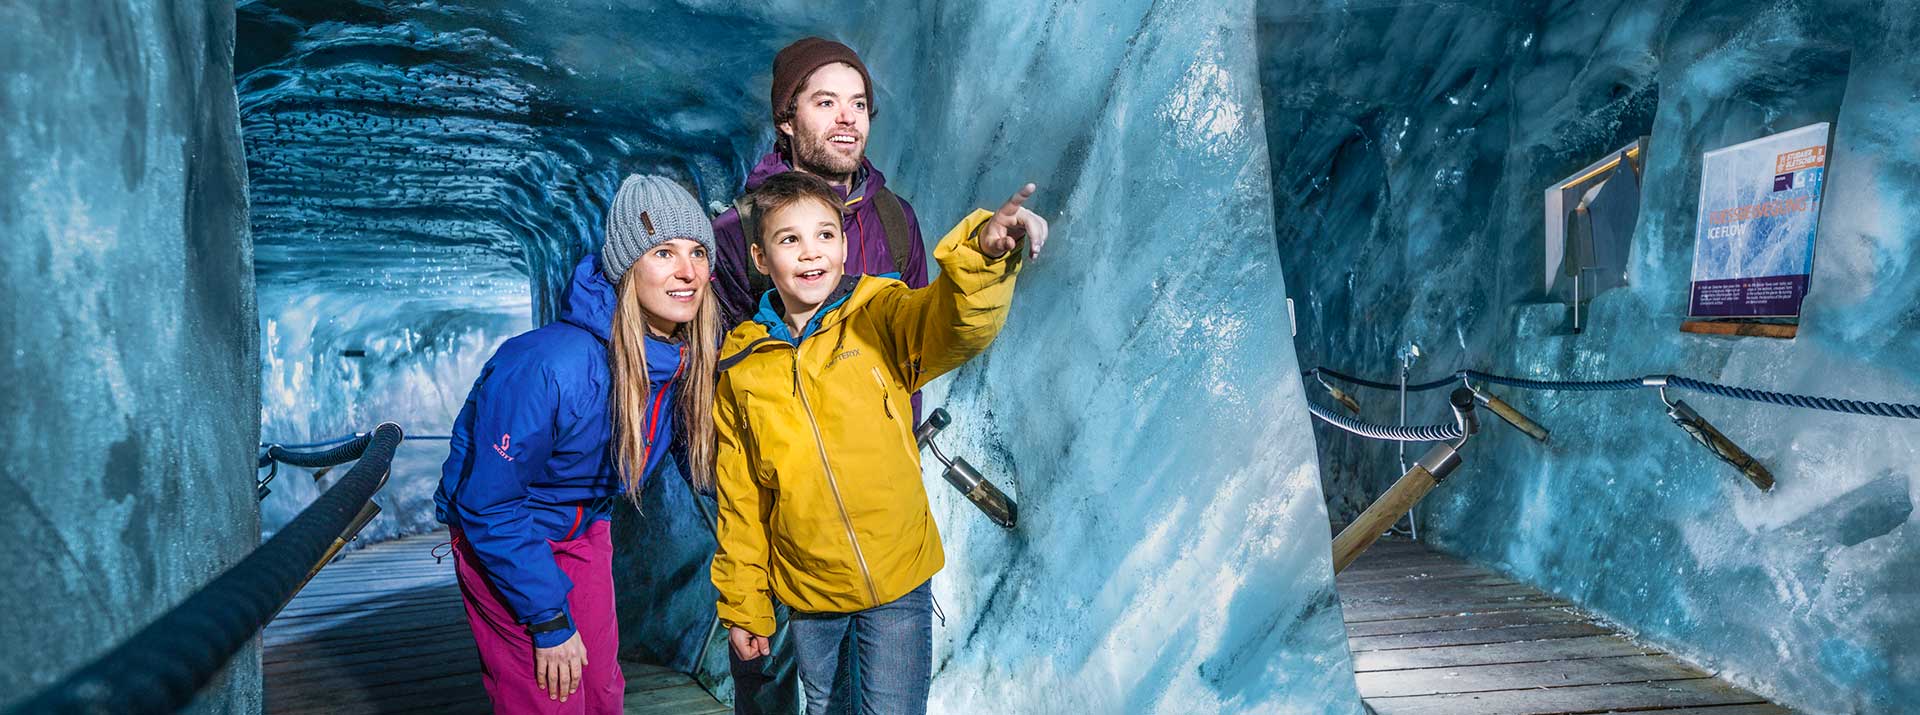 Familienurlaub im Neustift - Besondere Einblicke in der Eishöhle am Stubaier Gletscher